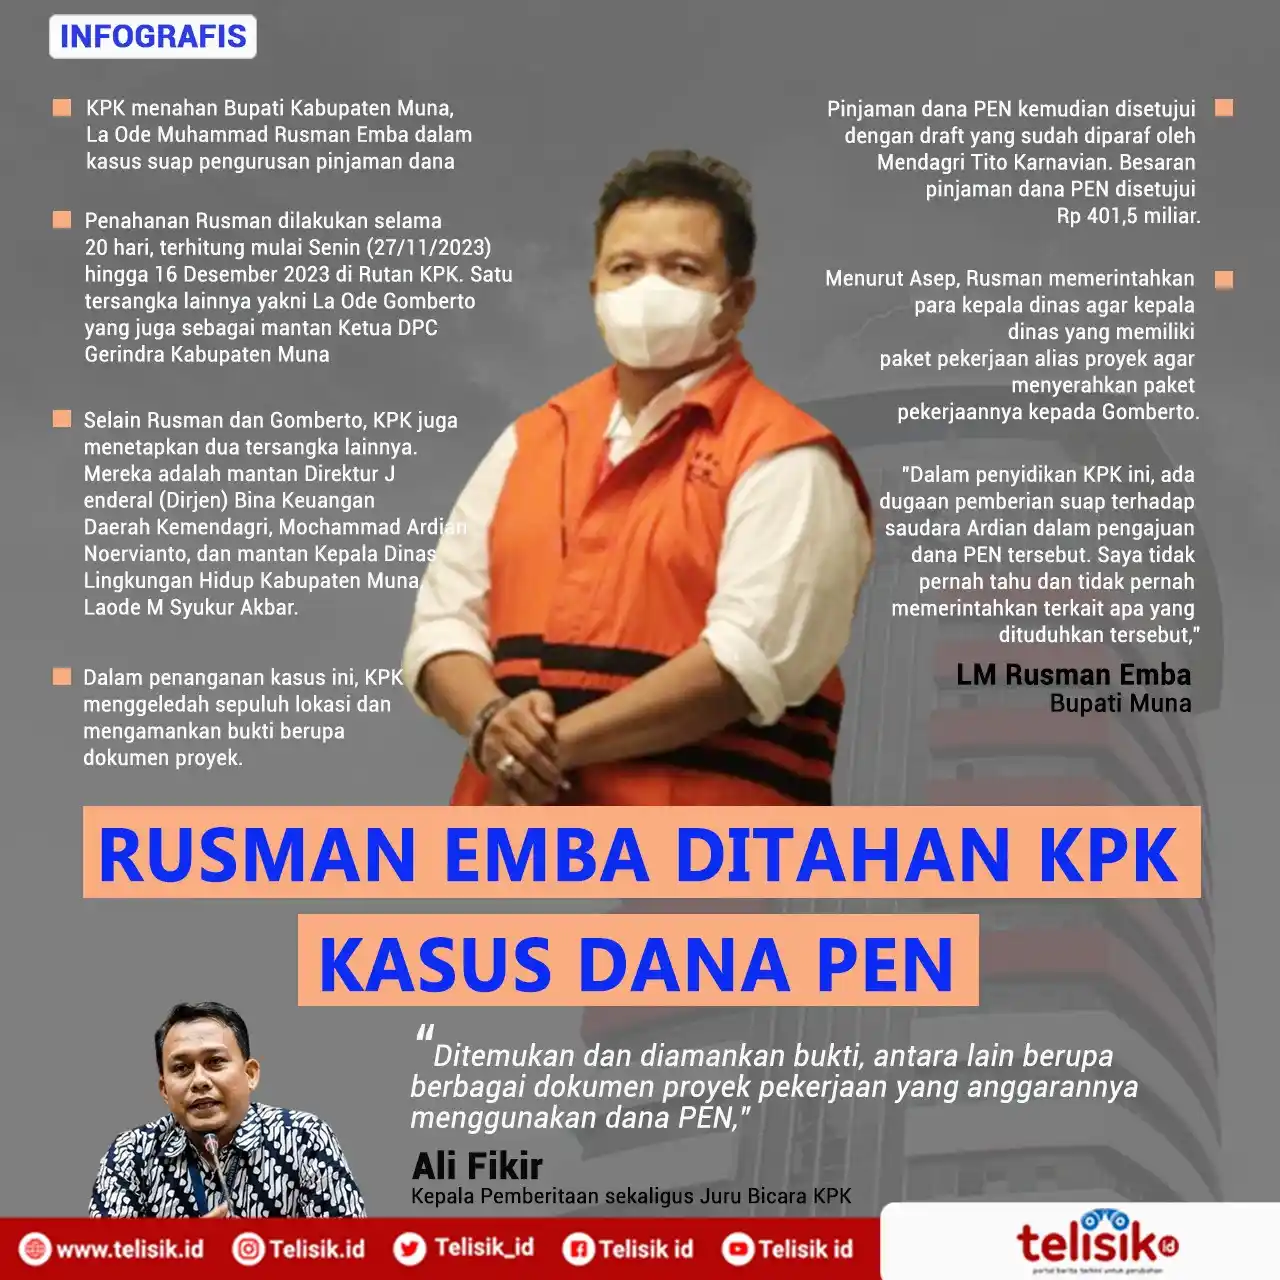 Infografis: Rusman Emba Ditahan KPK Kasus Dana PEN